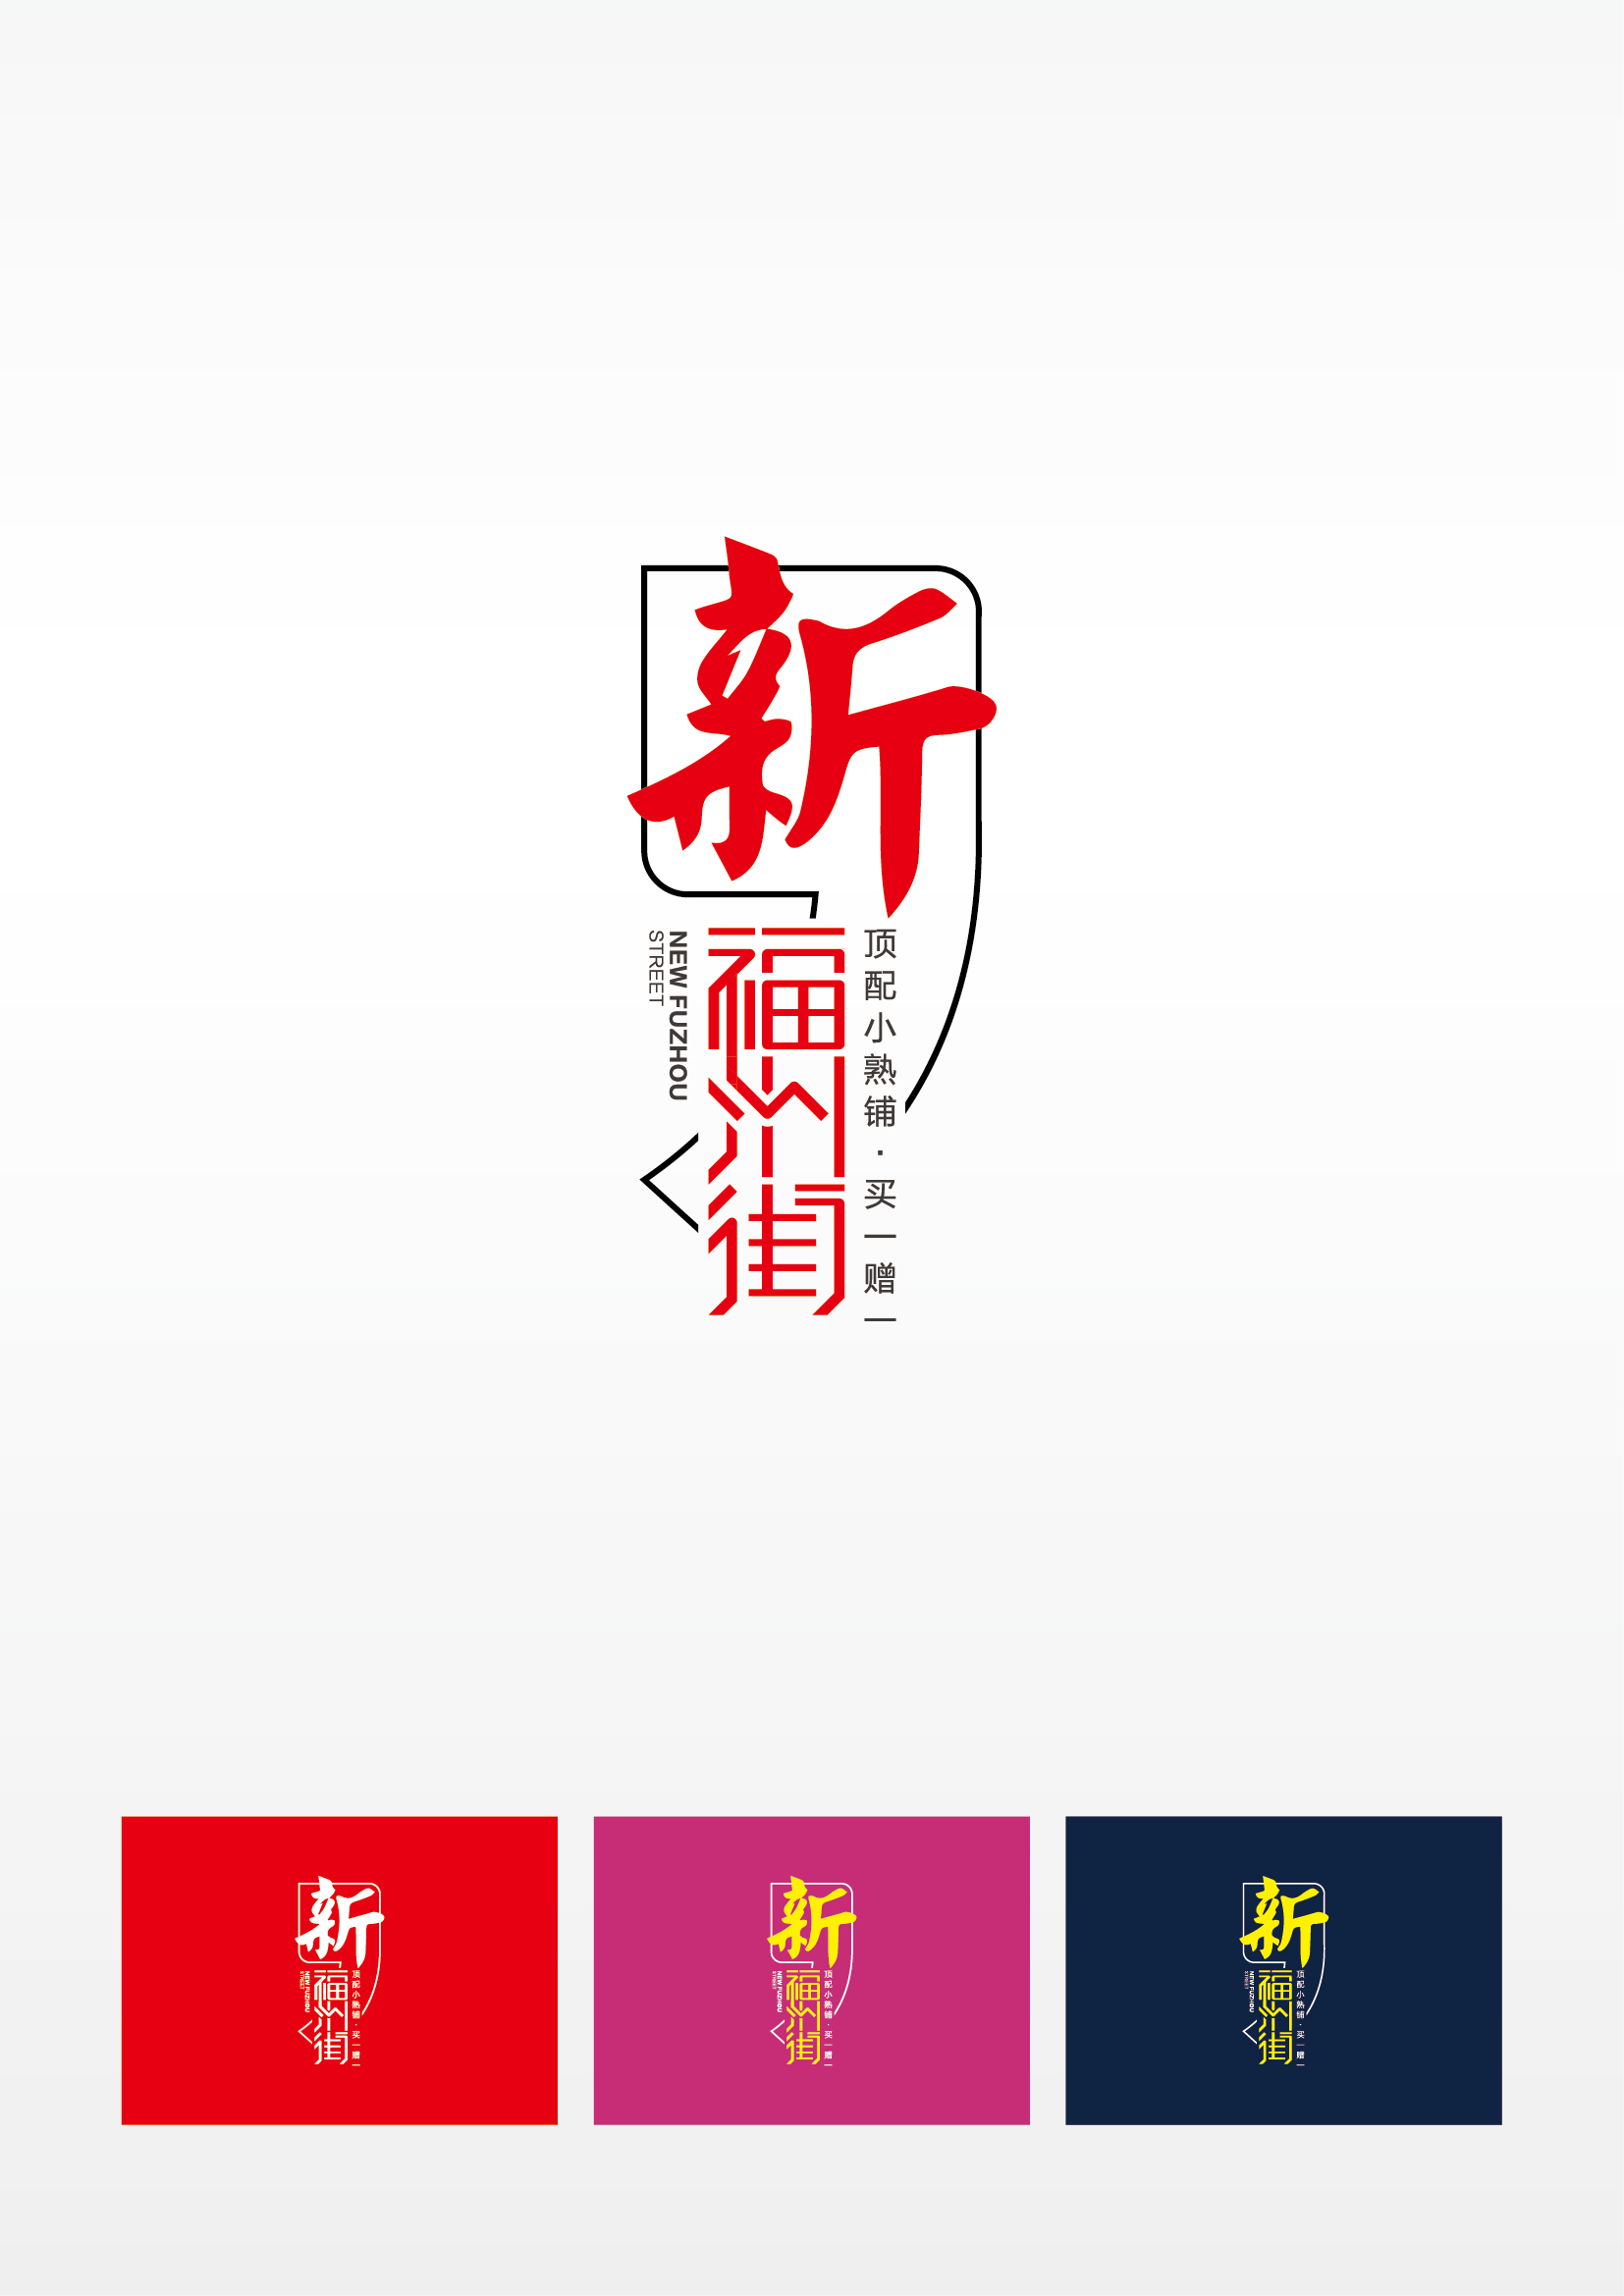 【地产之路-1114】福州街坊-商业logo dm一套